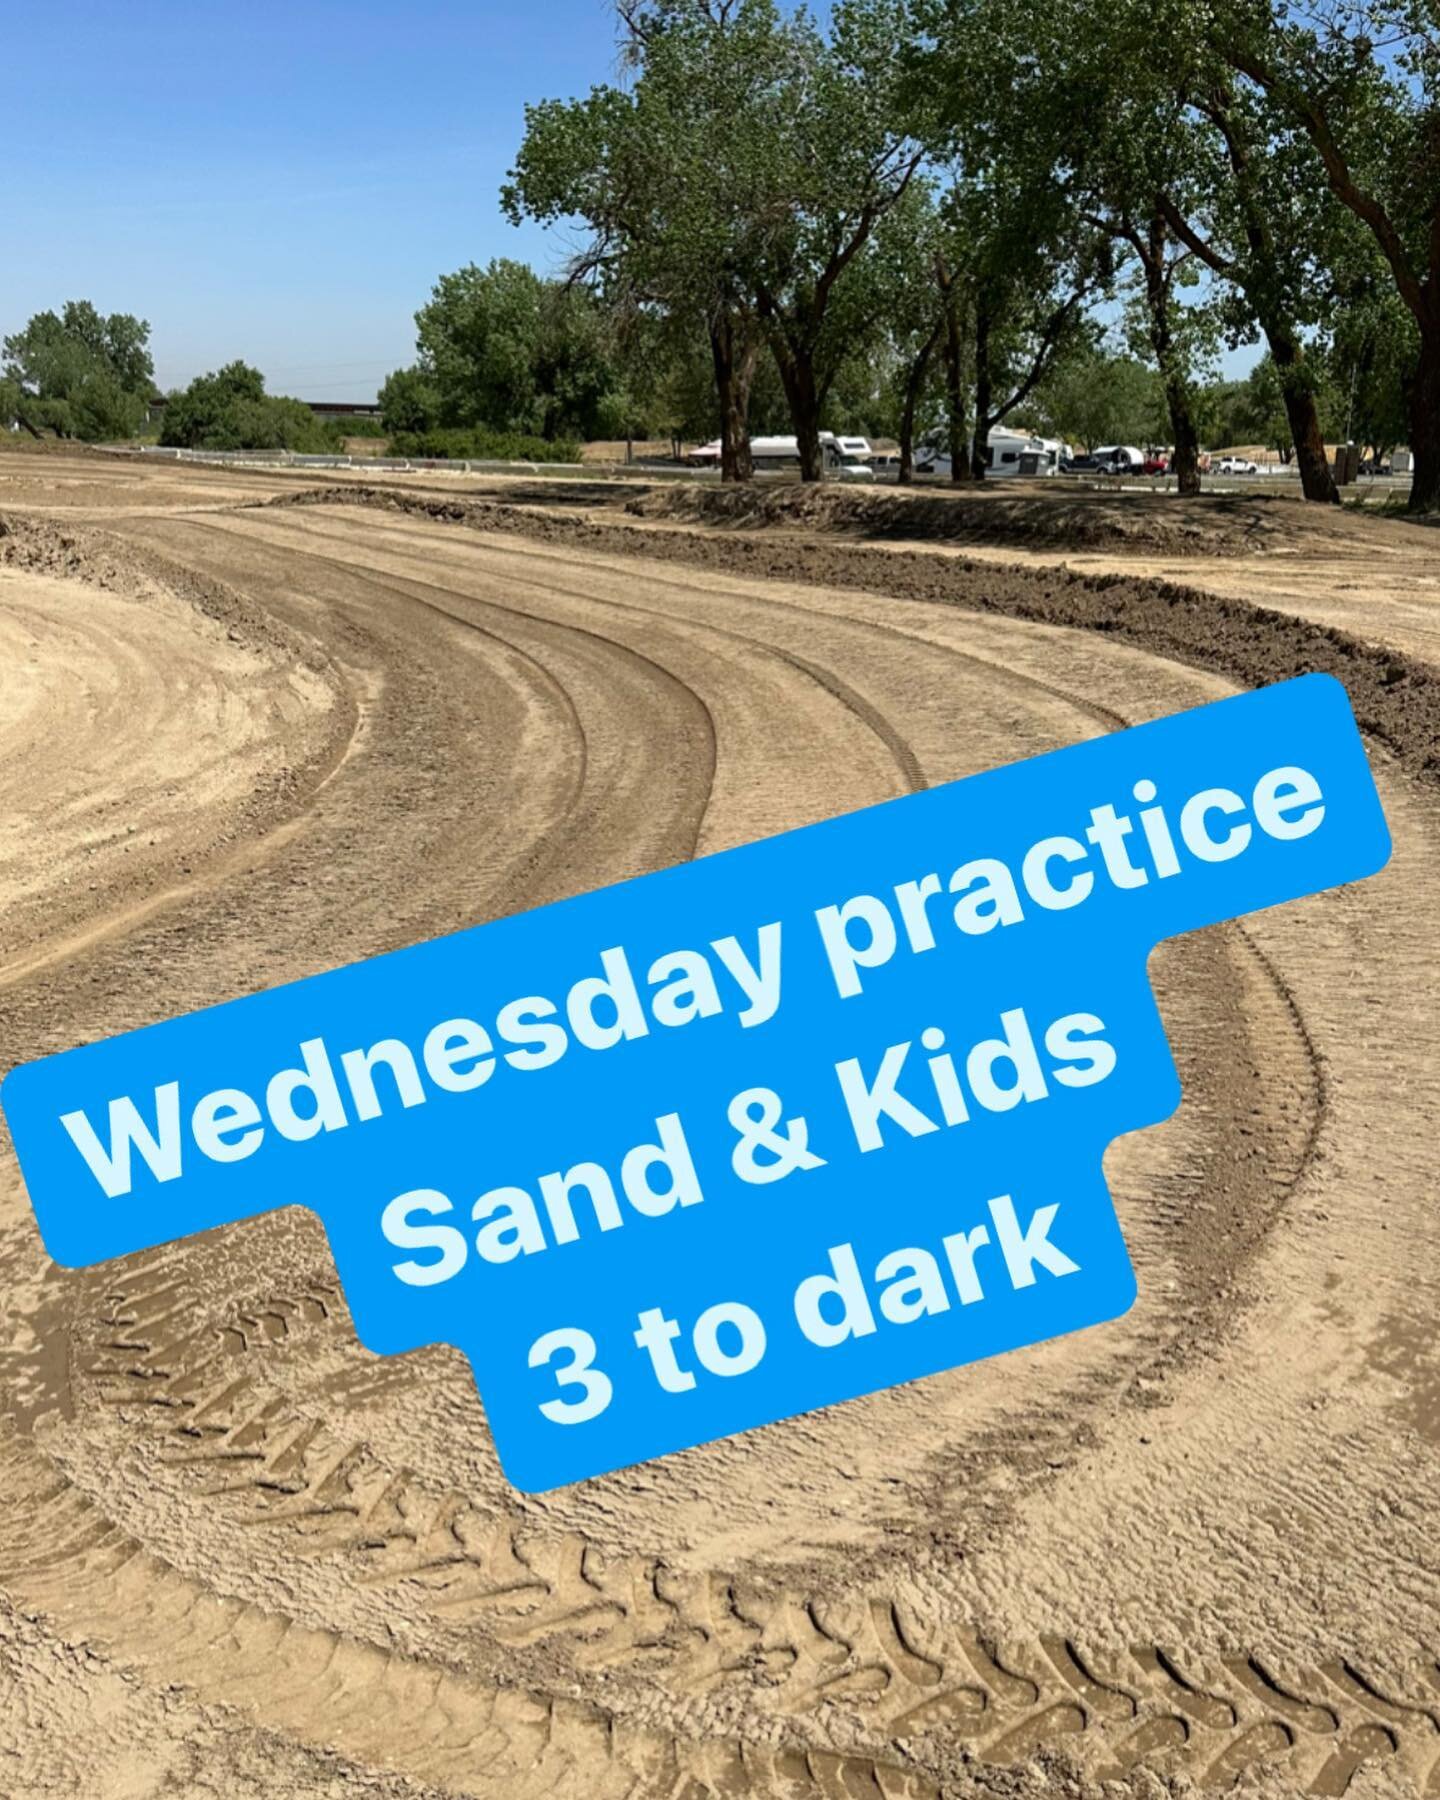 This week! 
Wednesday 3 to dark Sand &amp; kids
Saturday Main, Sand &amp; kids 9 to 2
Sunday Vintage, Main, Sand &amp; kids 9 to 3